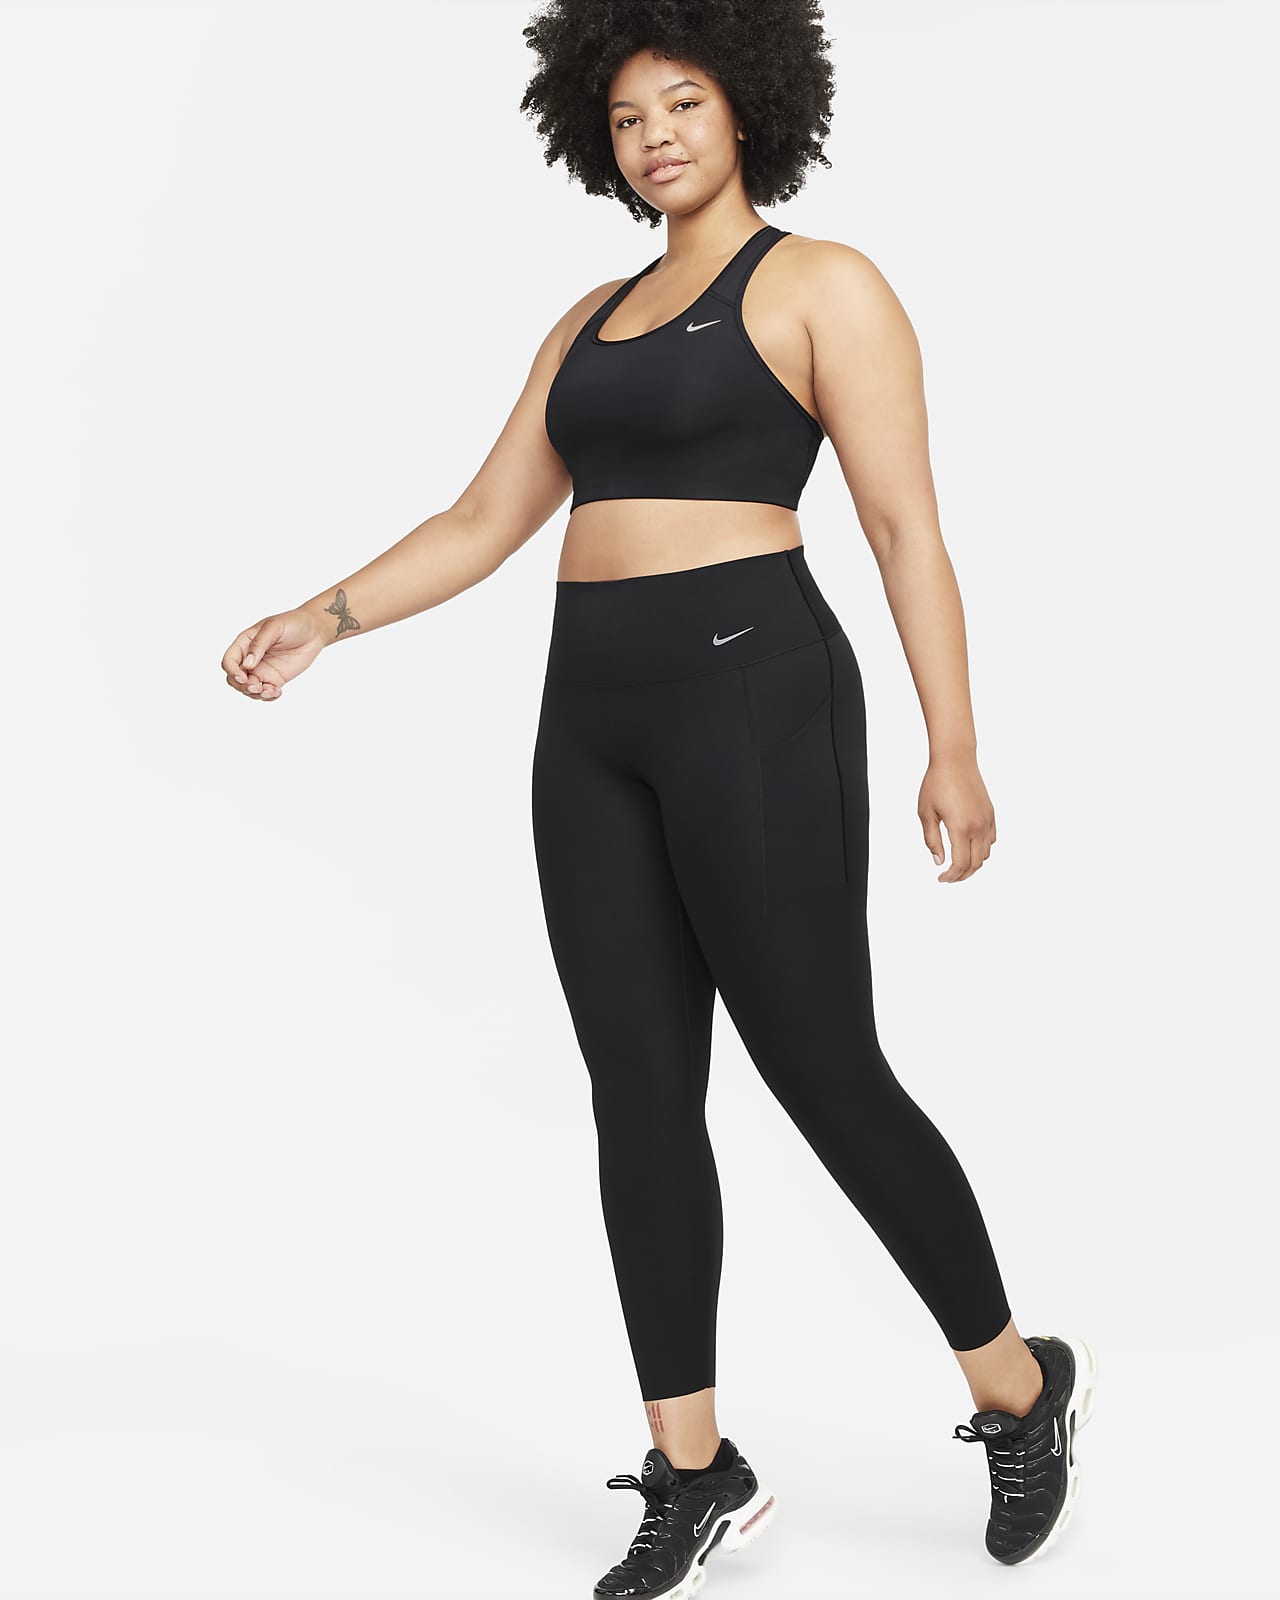 Nike Universa leggings i 7/8 lengde med middels støtte, høyt liv og lommer til dame